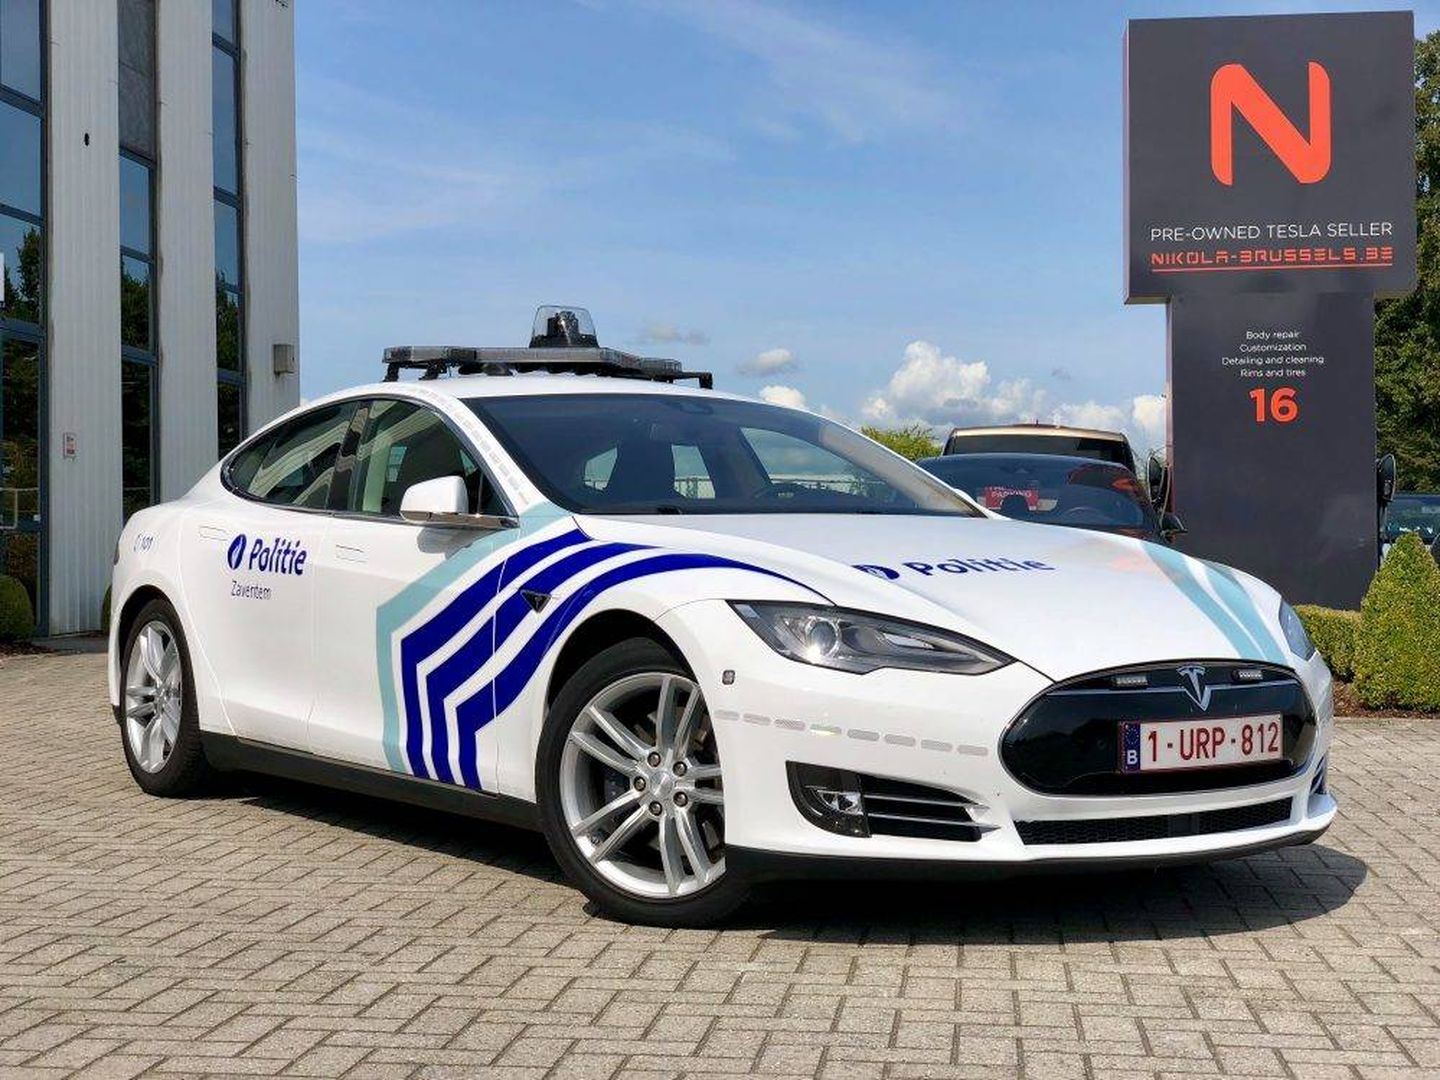 Fotografía facilitada por el concesionario del nuevo Tesla de la policía de Zaventem (Wonitrol Carrosserie)